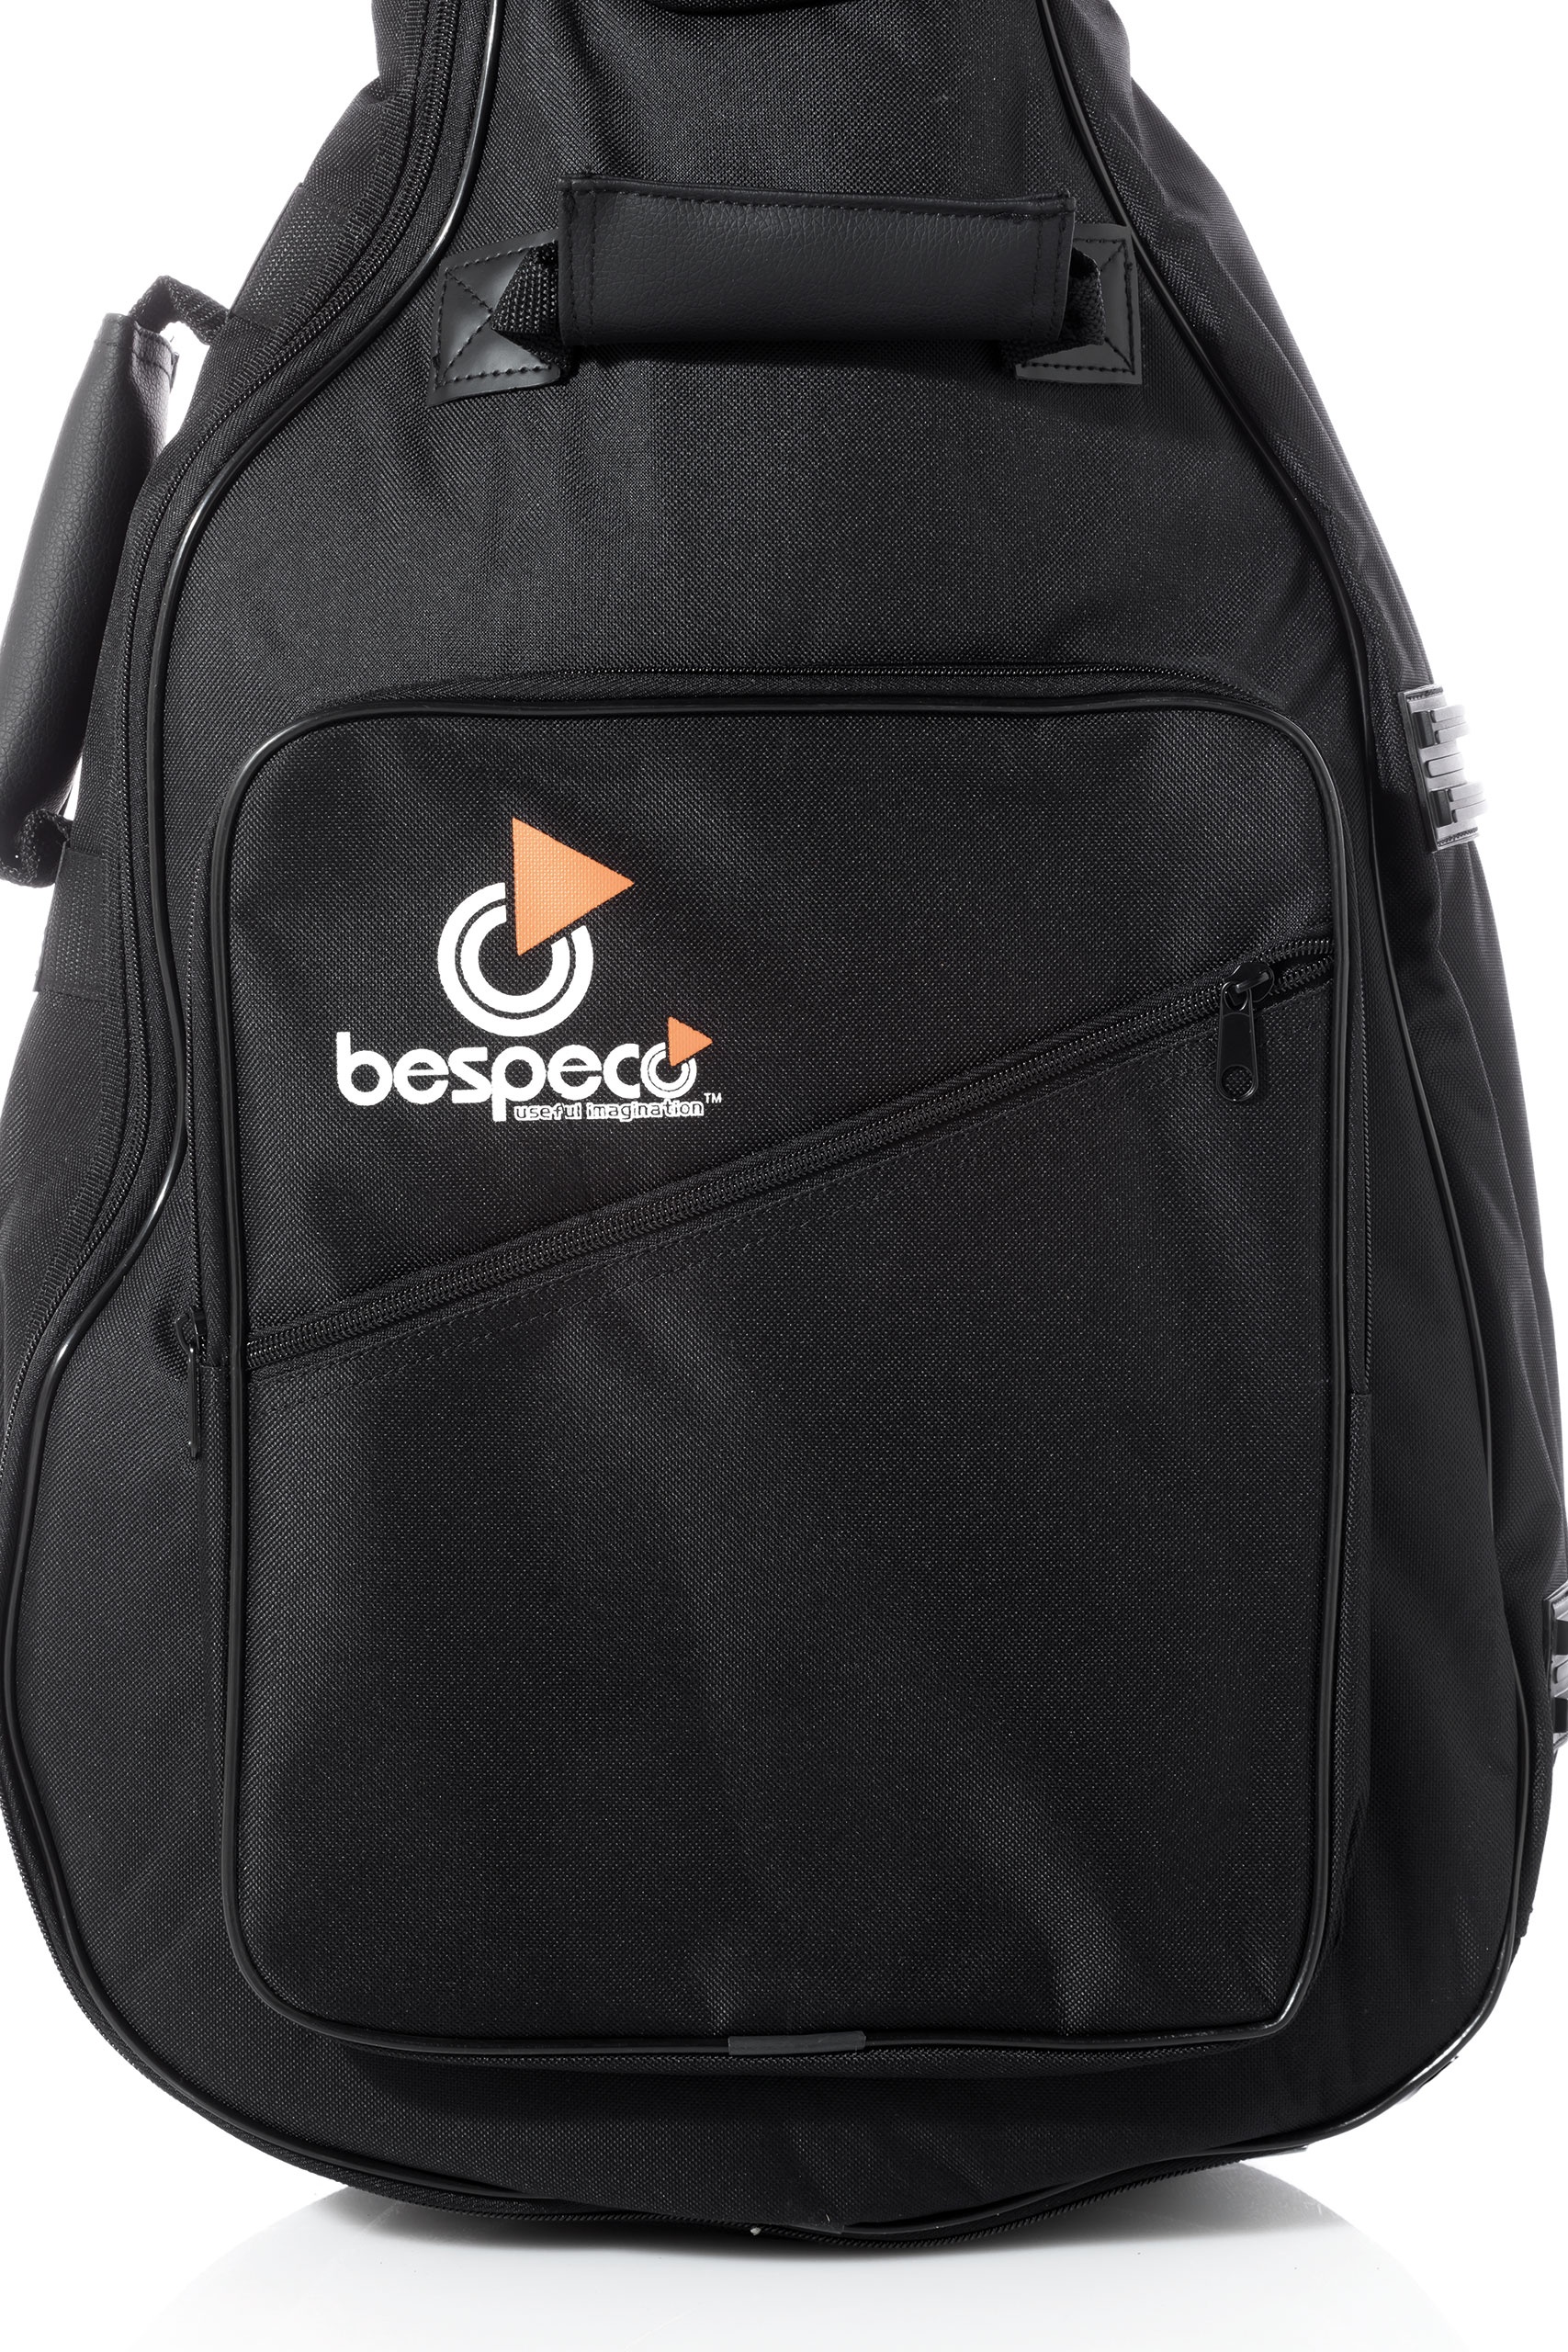 bag230bg-borsa-per-basso-elettrico-imbottitura-15-mm-nera